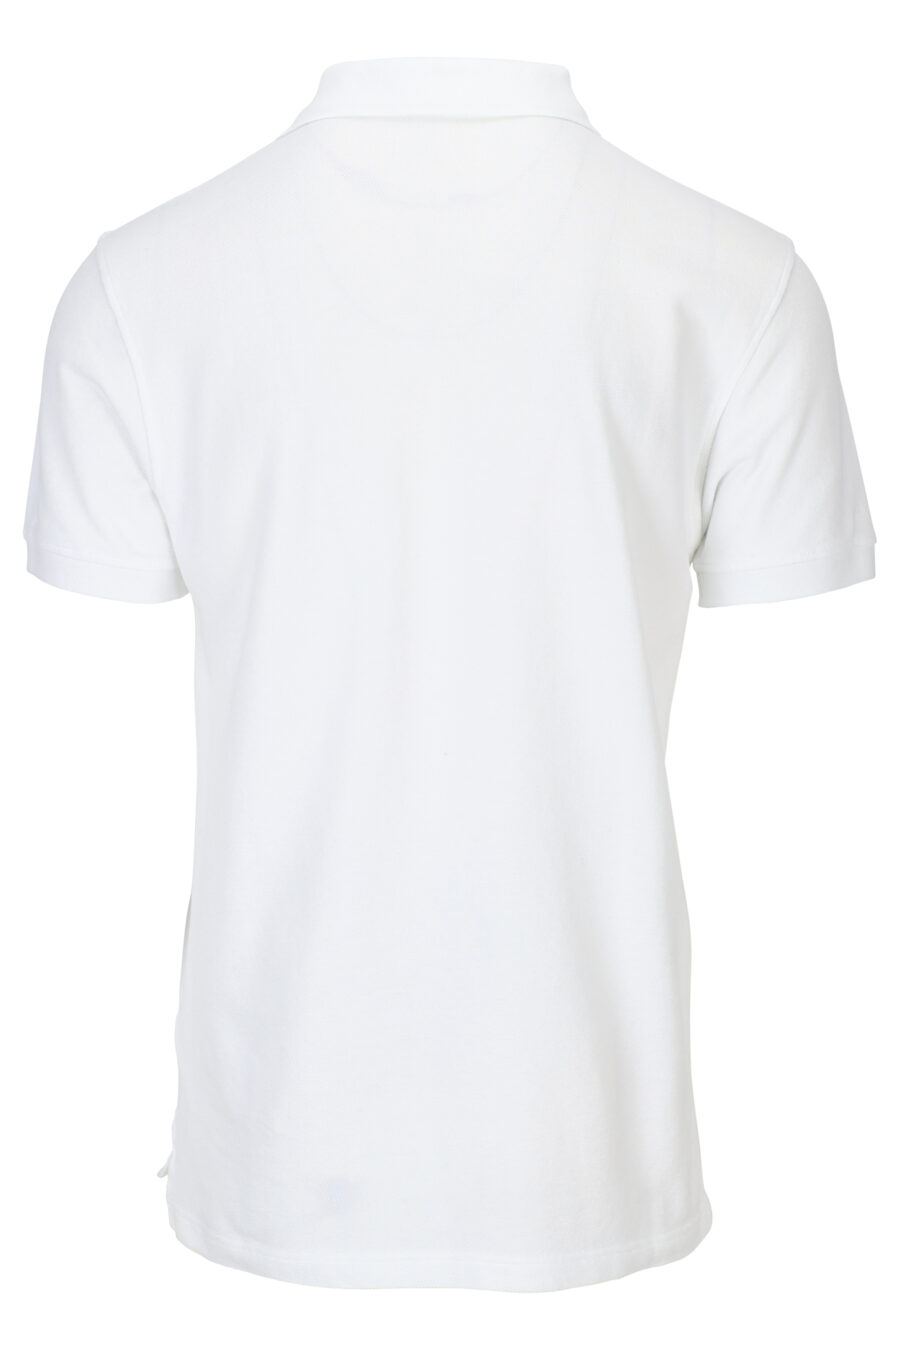 White polo shirt with mini logo "kenzo paris" - 3612230542273 1